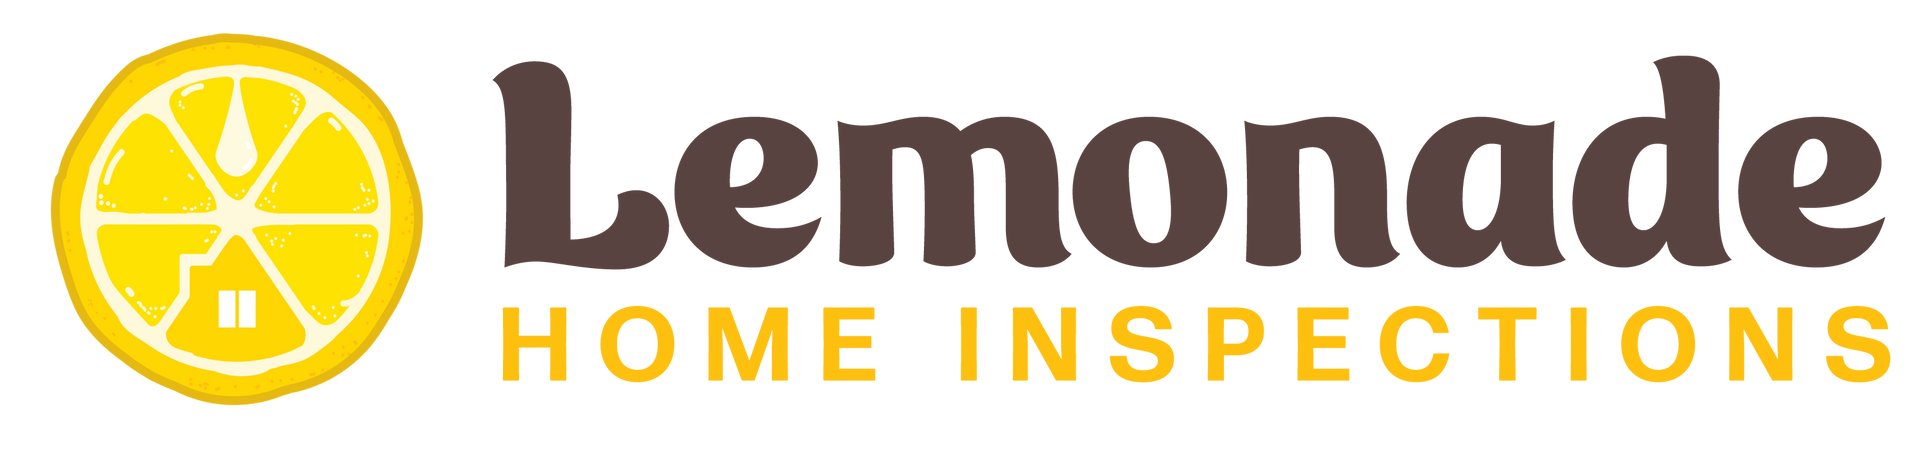 lemonade home inspection logo